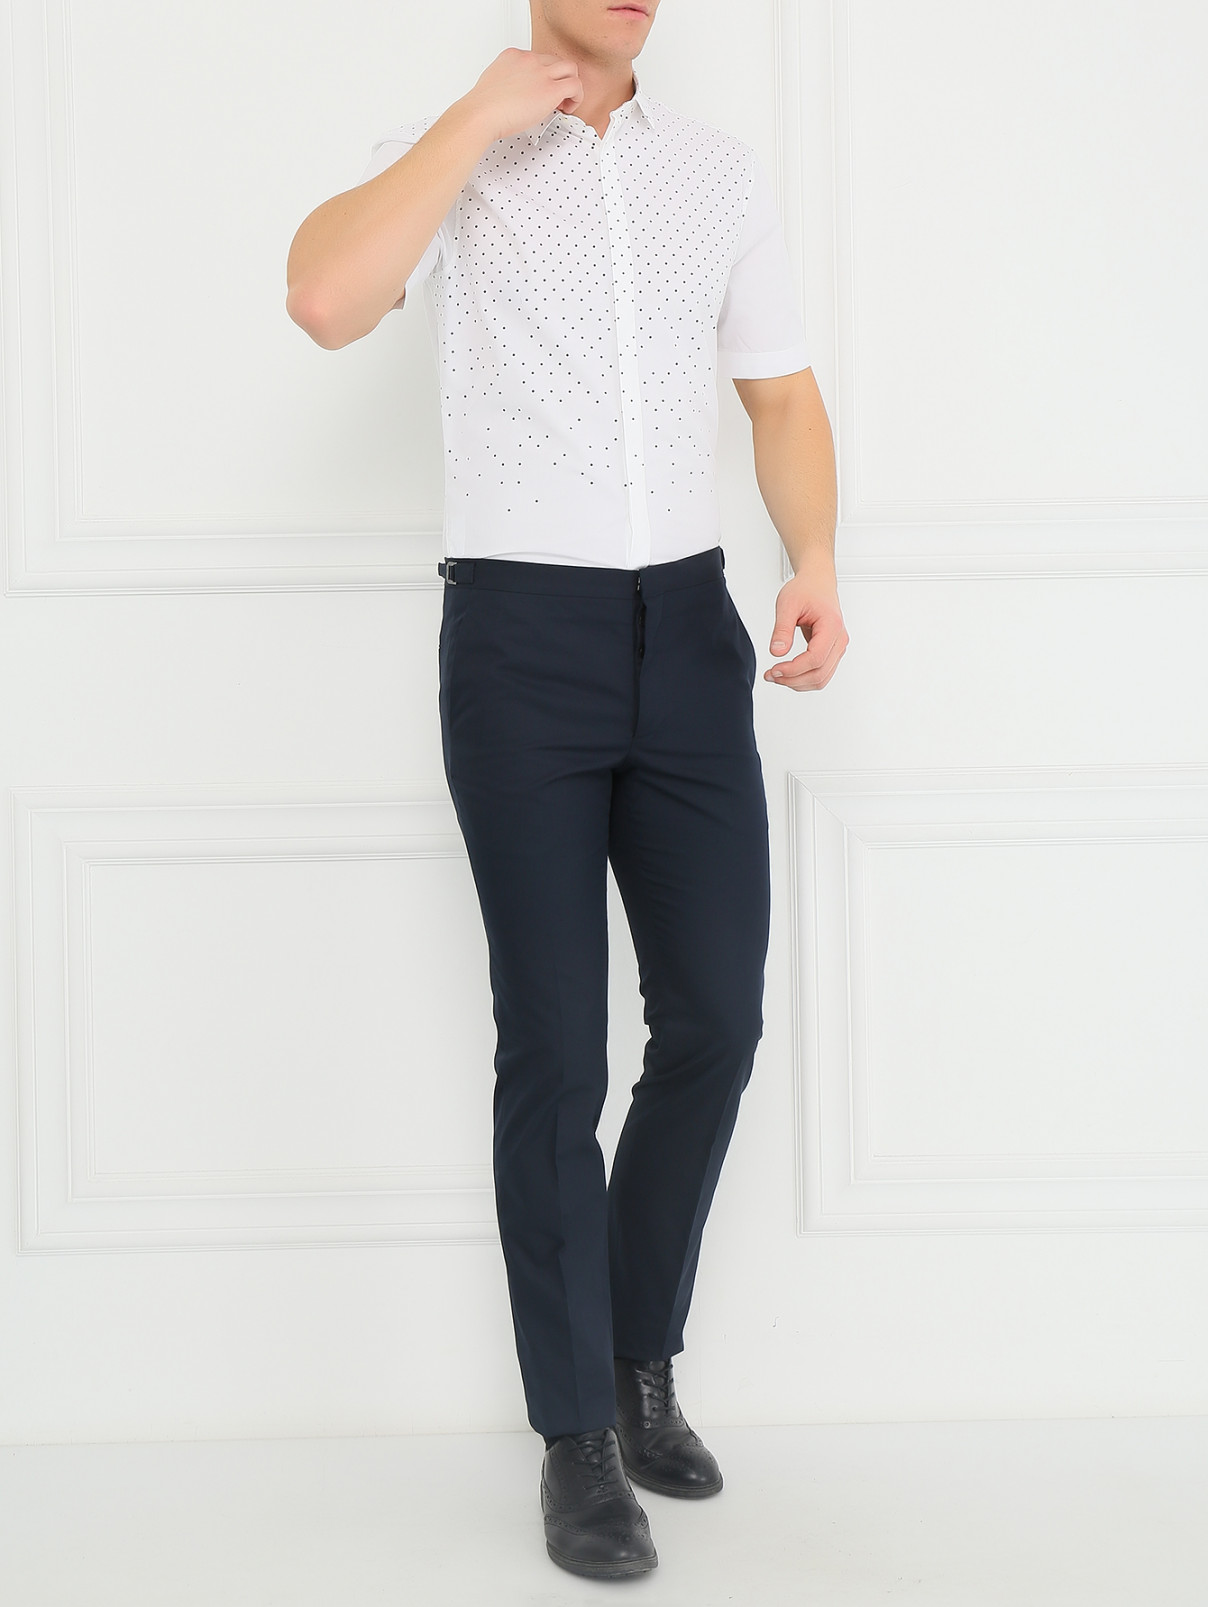 Классические брюки из хлопка Jil Sander  –  Модель Общий вид  – Цвет:  Синий